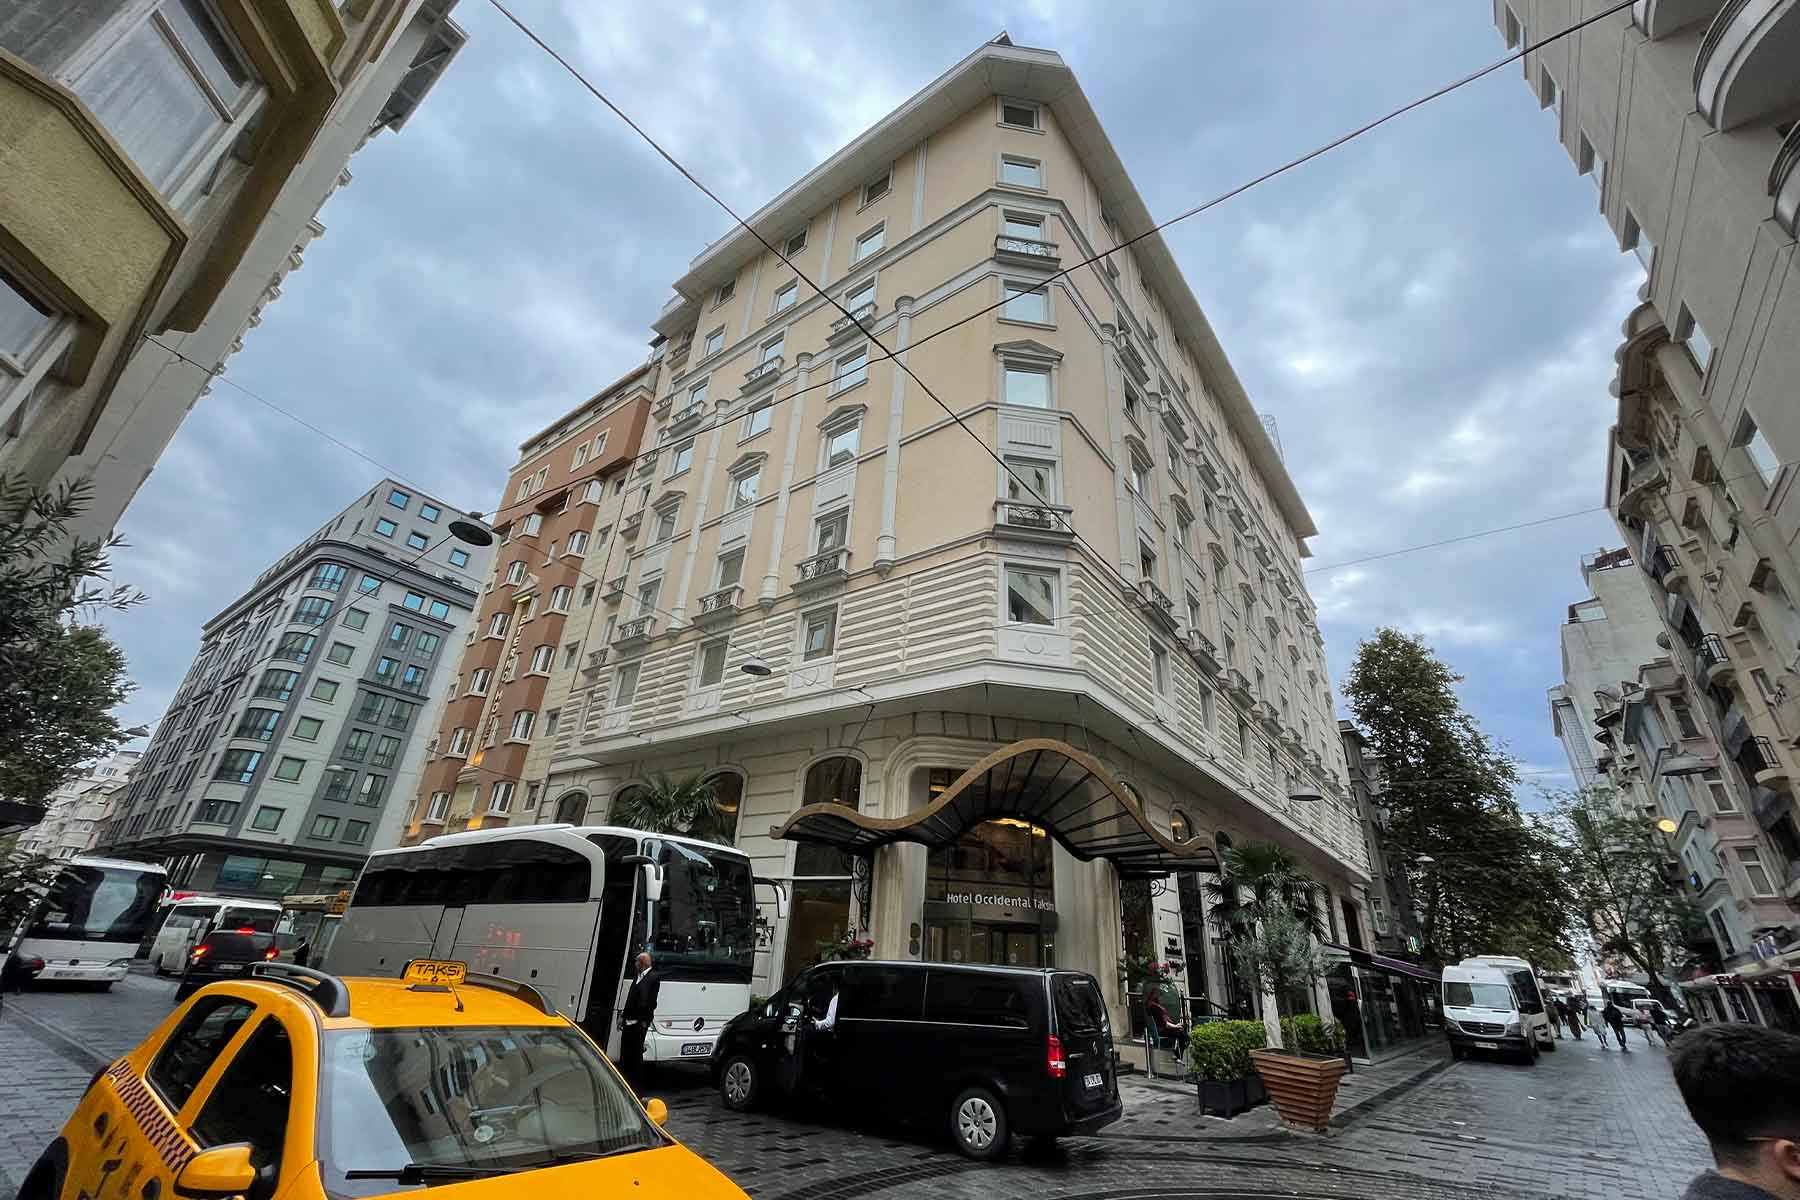 تور استانبول هتل فرونیا